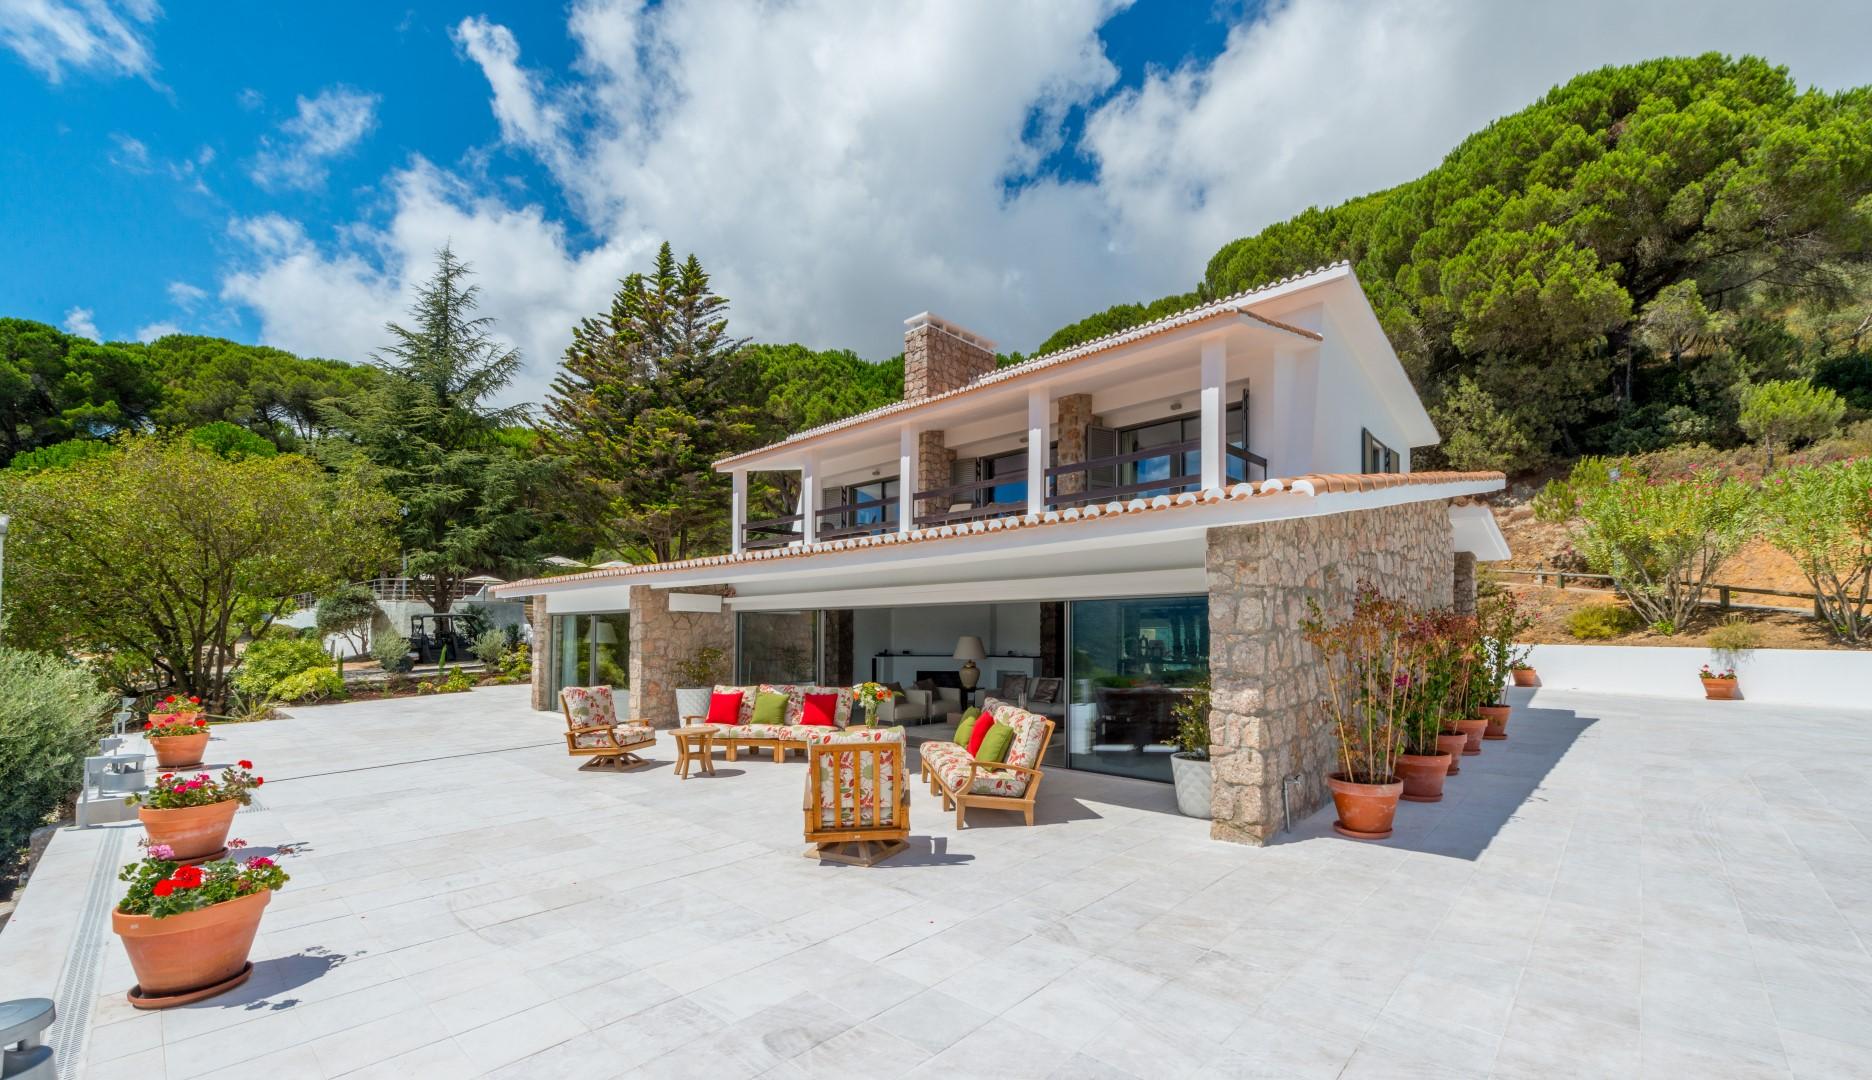 luxury stone contemporary farmhouse villa in hills in Portugal